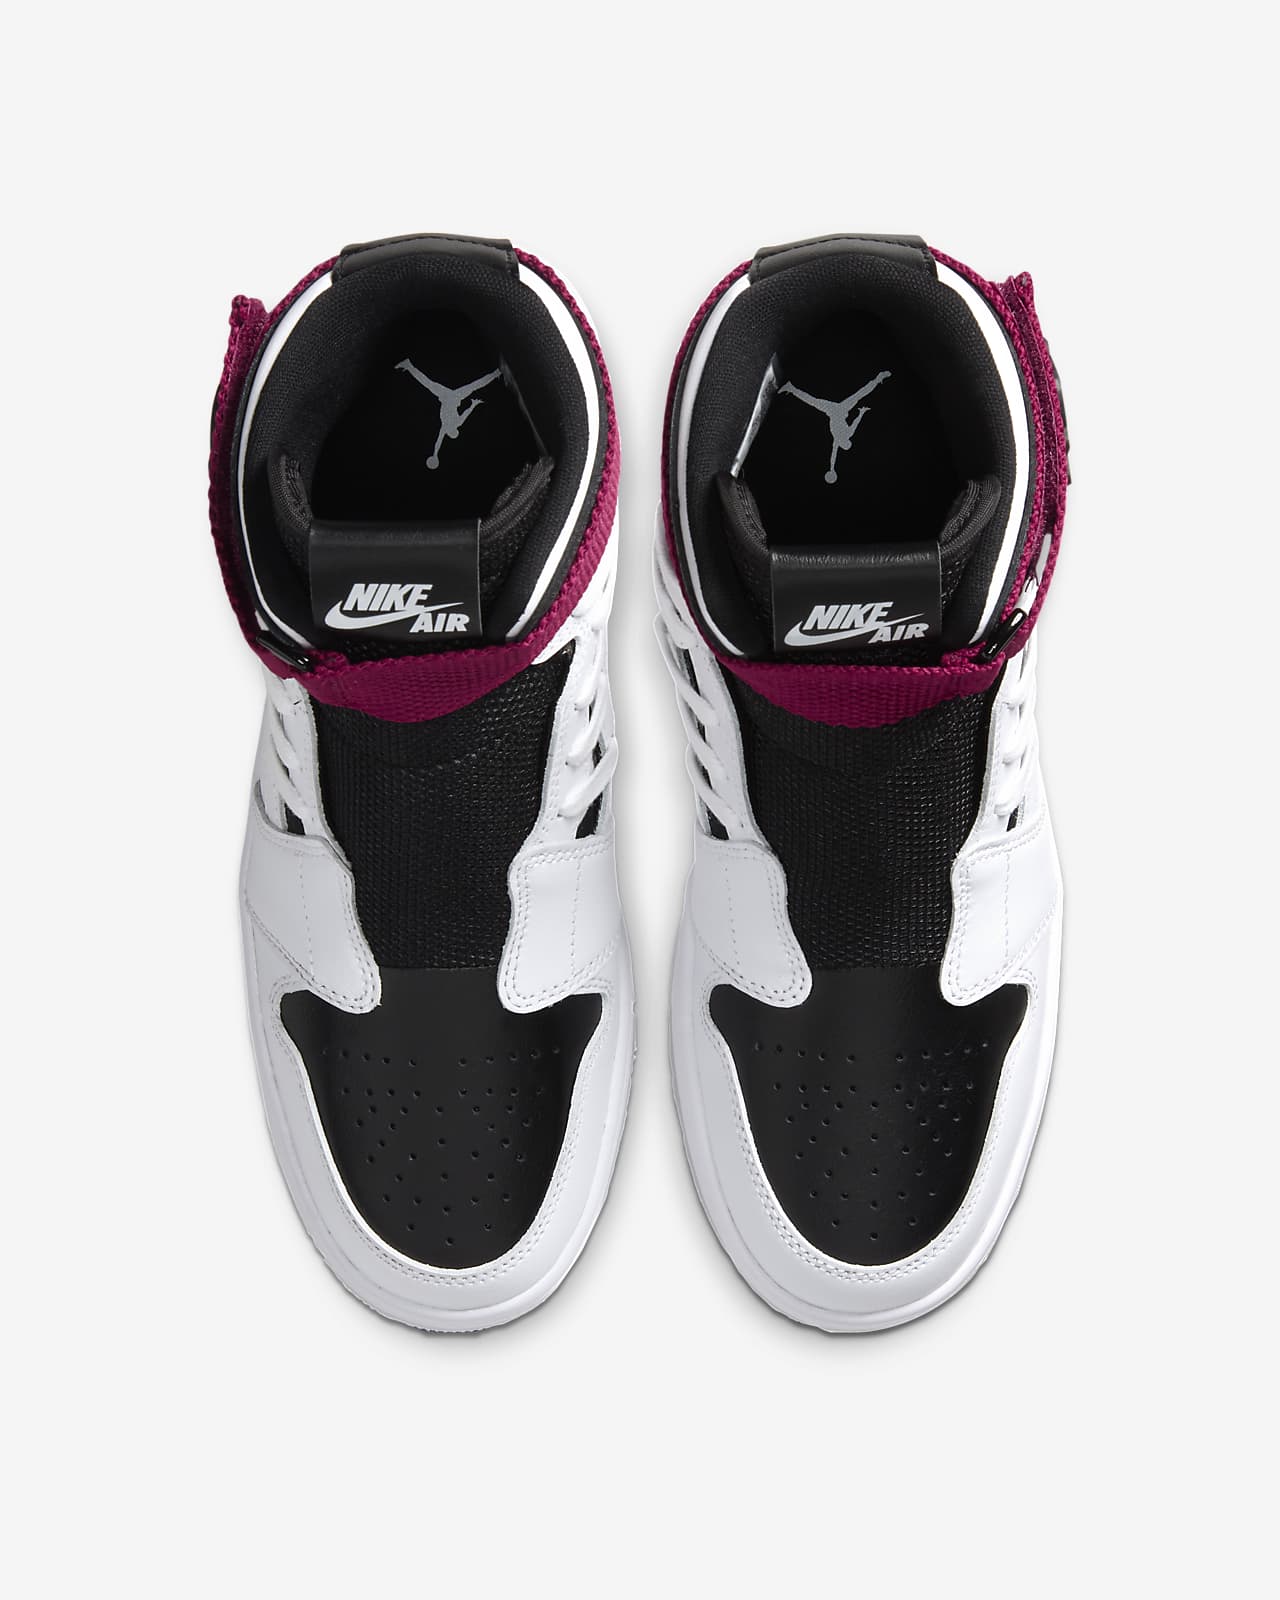 nike air jordan 1 nova sneakers in pink and black